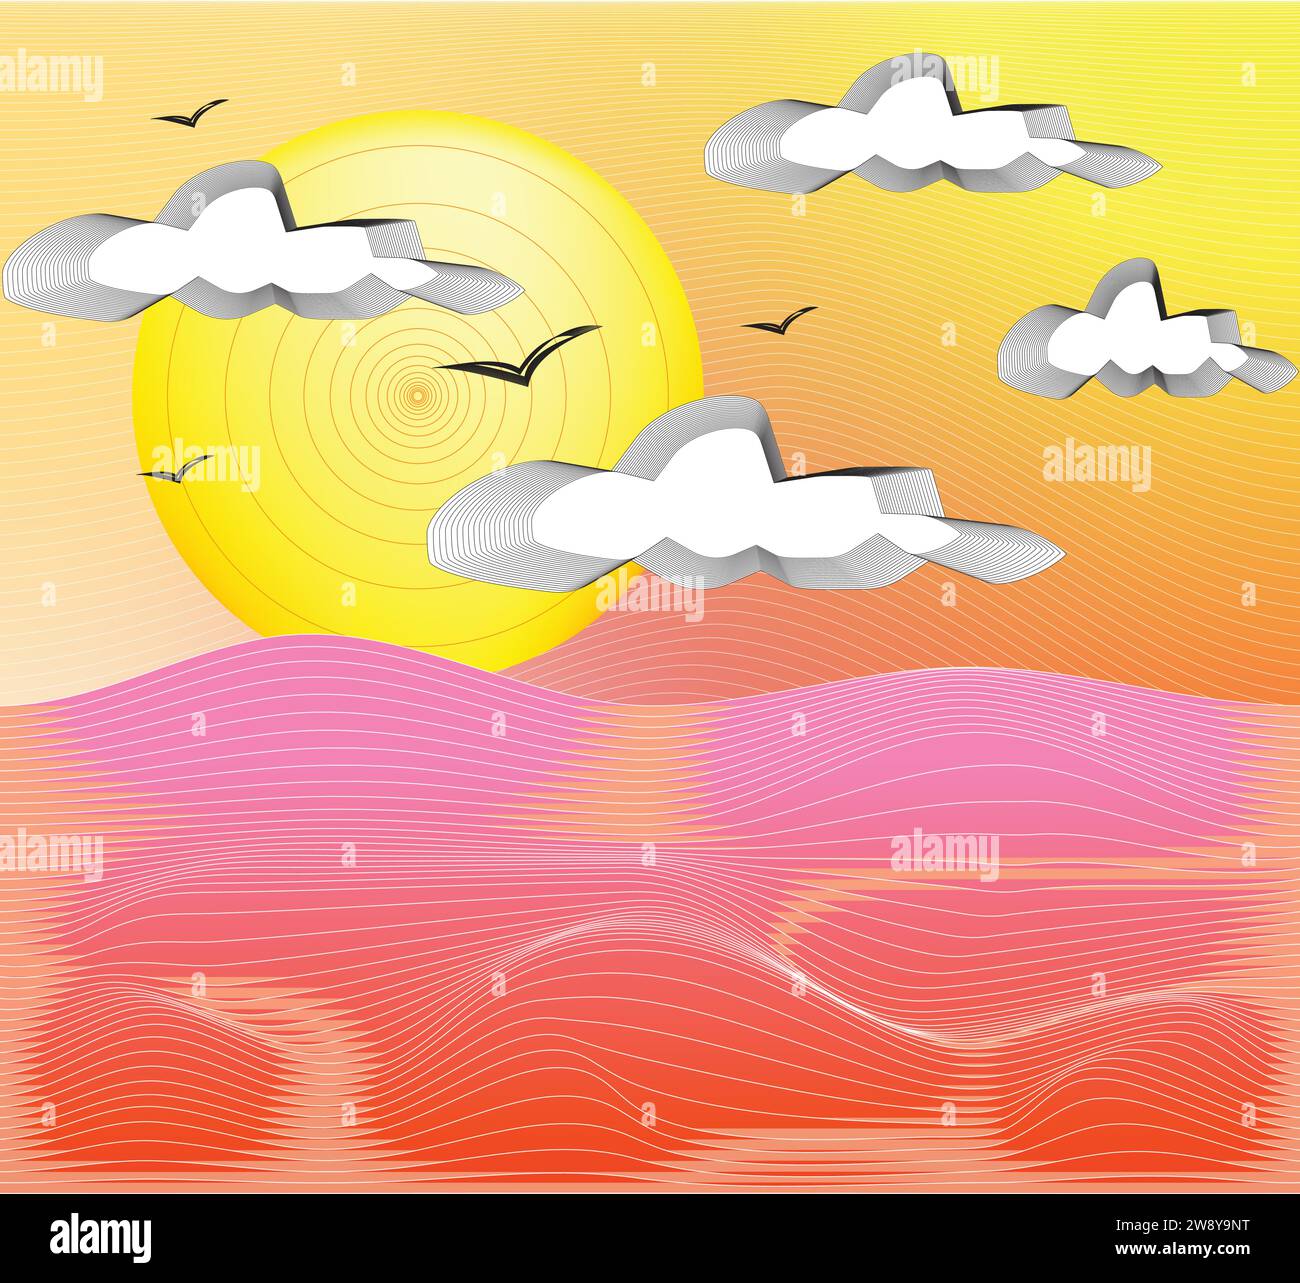 Hintergrund-Vektor-Illustration Dünen mit Sonnenuntergang auf Wolken am Himmel. Stock Vektor